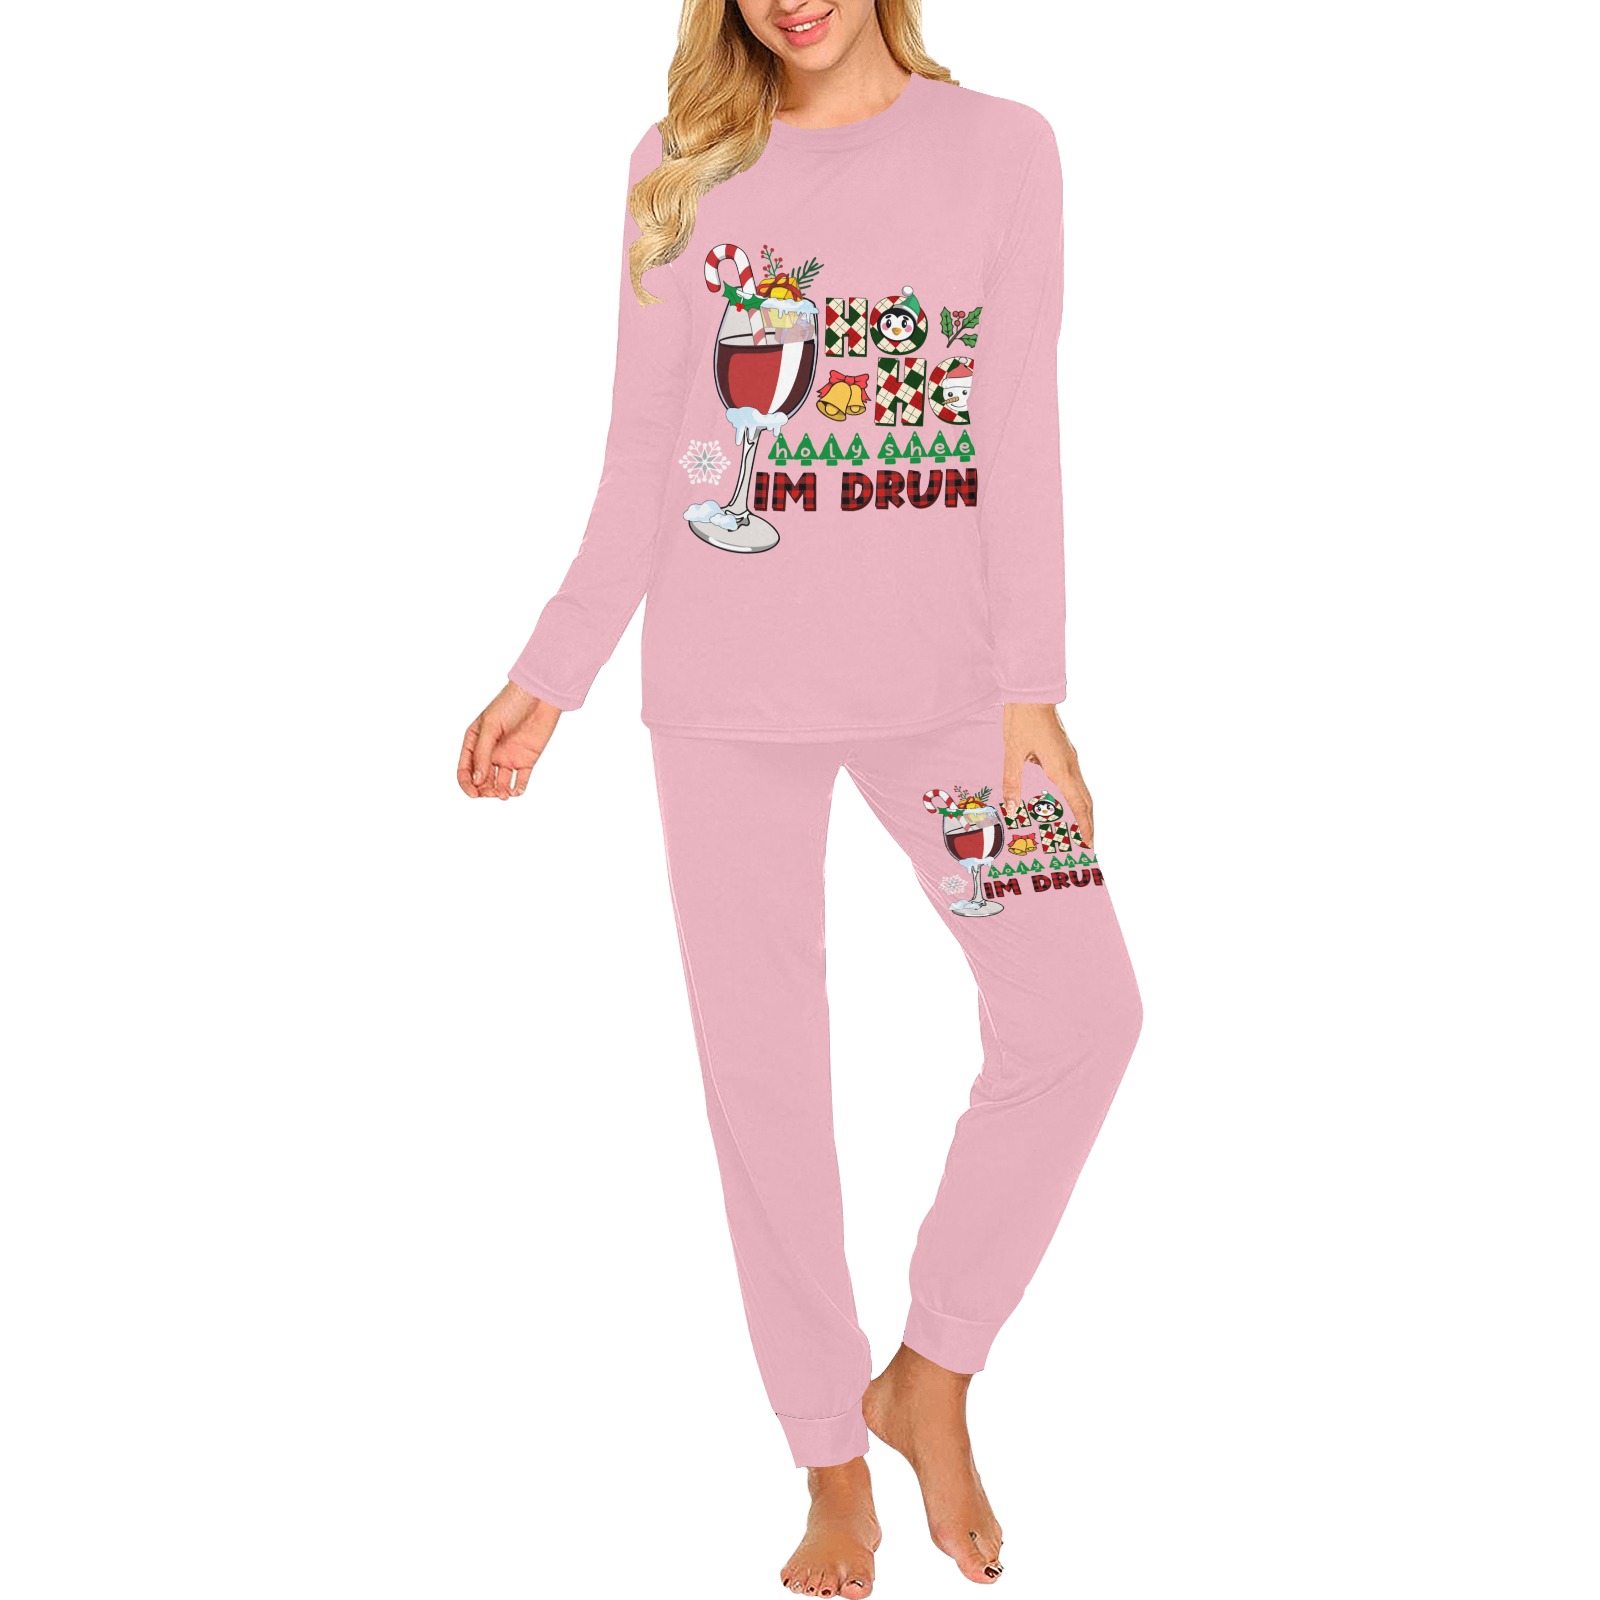 Ho Ho Holy Sheet I'm Drunk (P) Women's All Over Print Pajama Set